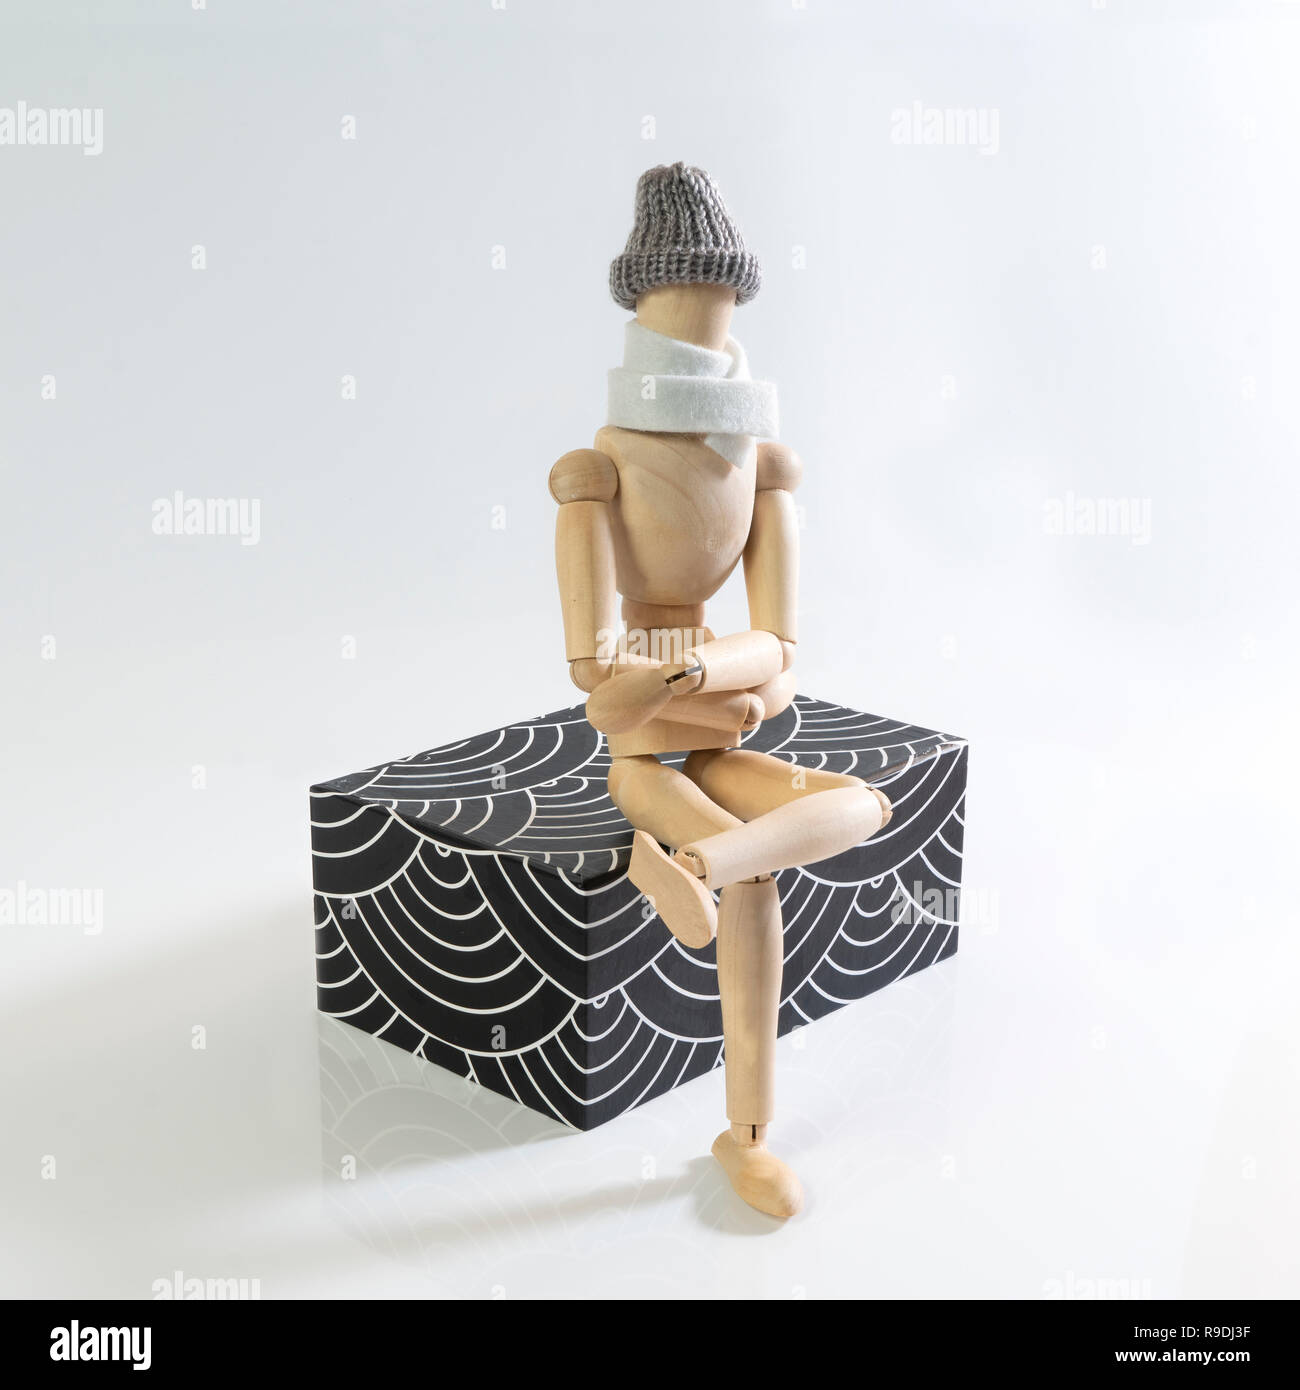 Une marionnette en bois avec l'écharpe et le chapeau assis sur un parallélépipède décorées Banque D'Images